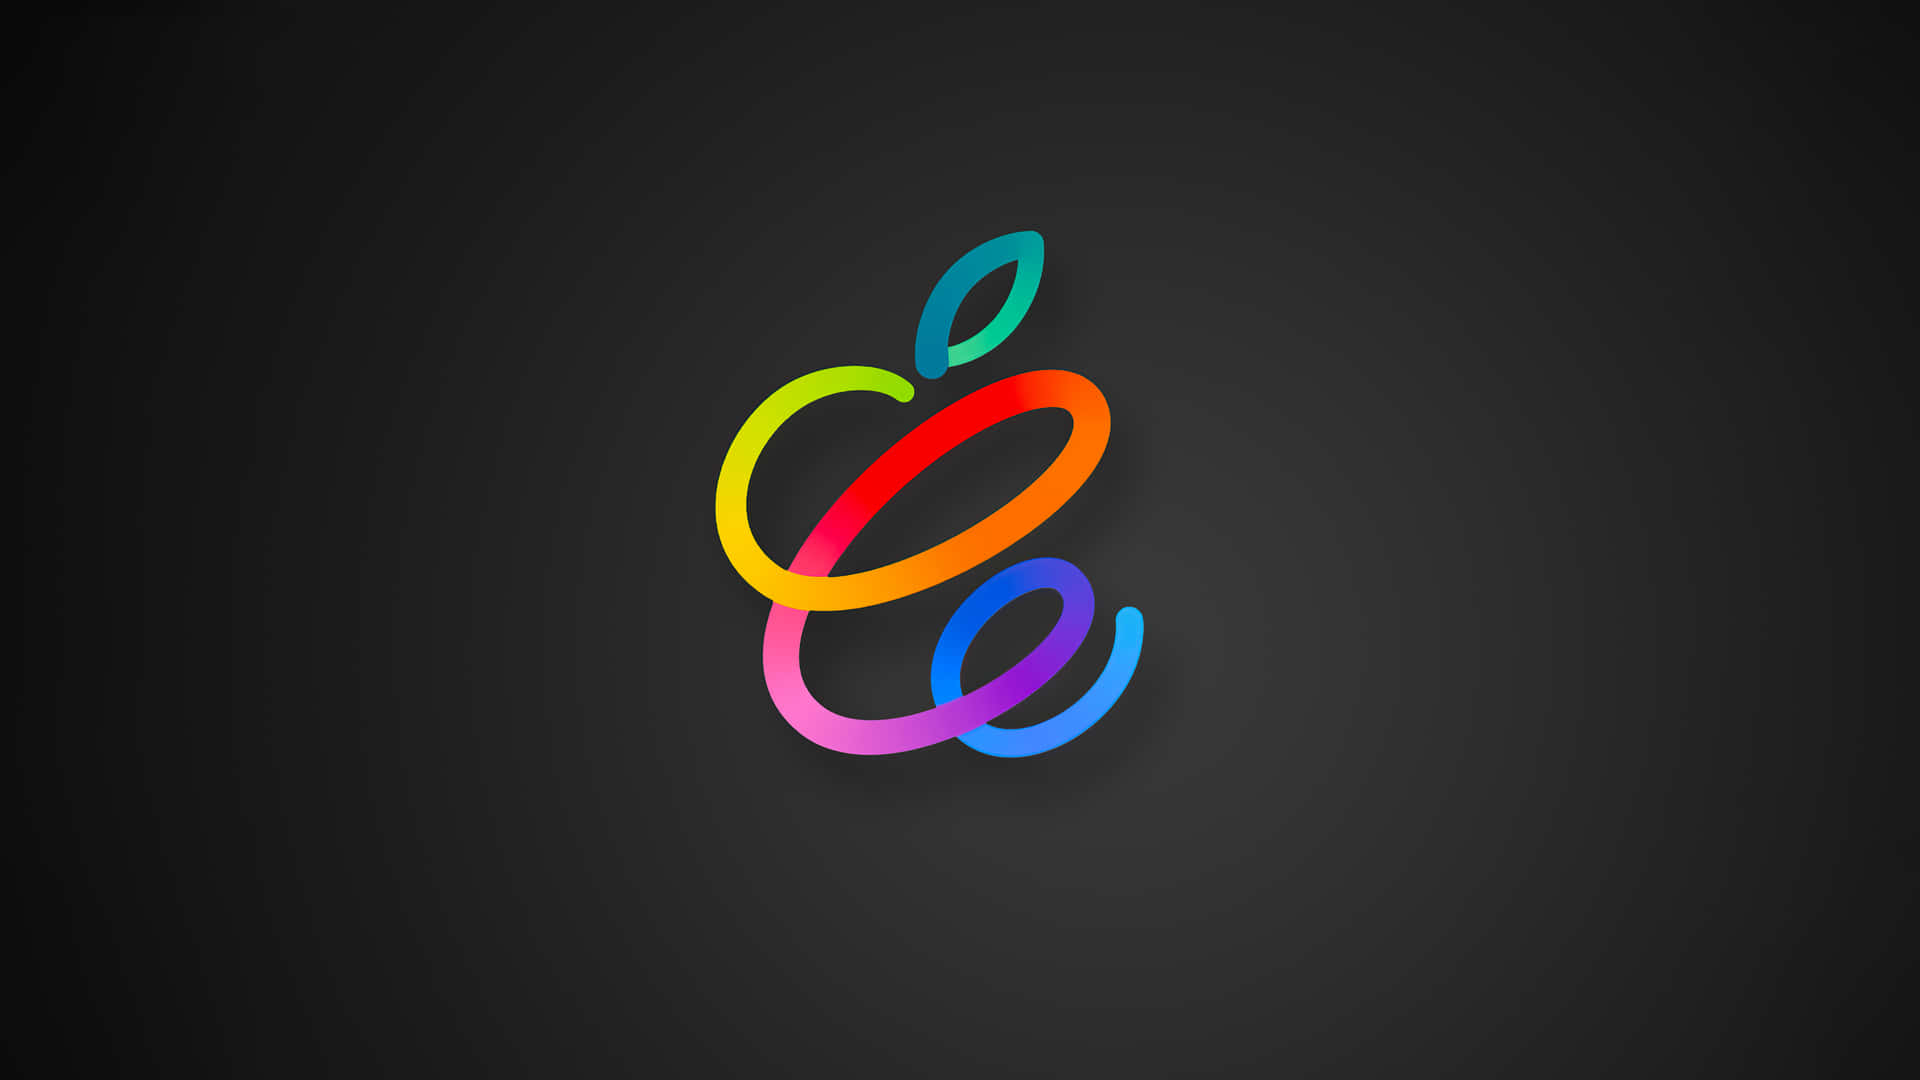 Apple4k: Den Skarpeste Og Mest Farverige Skærm Wallpaper